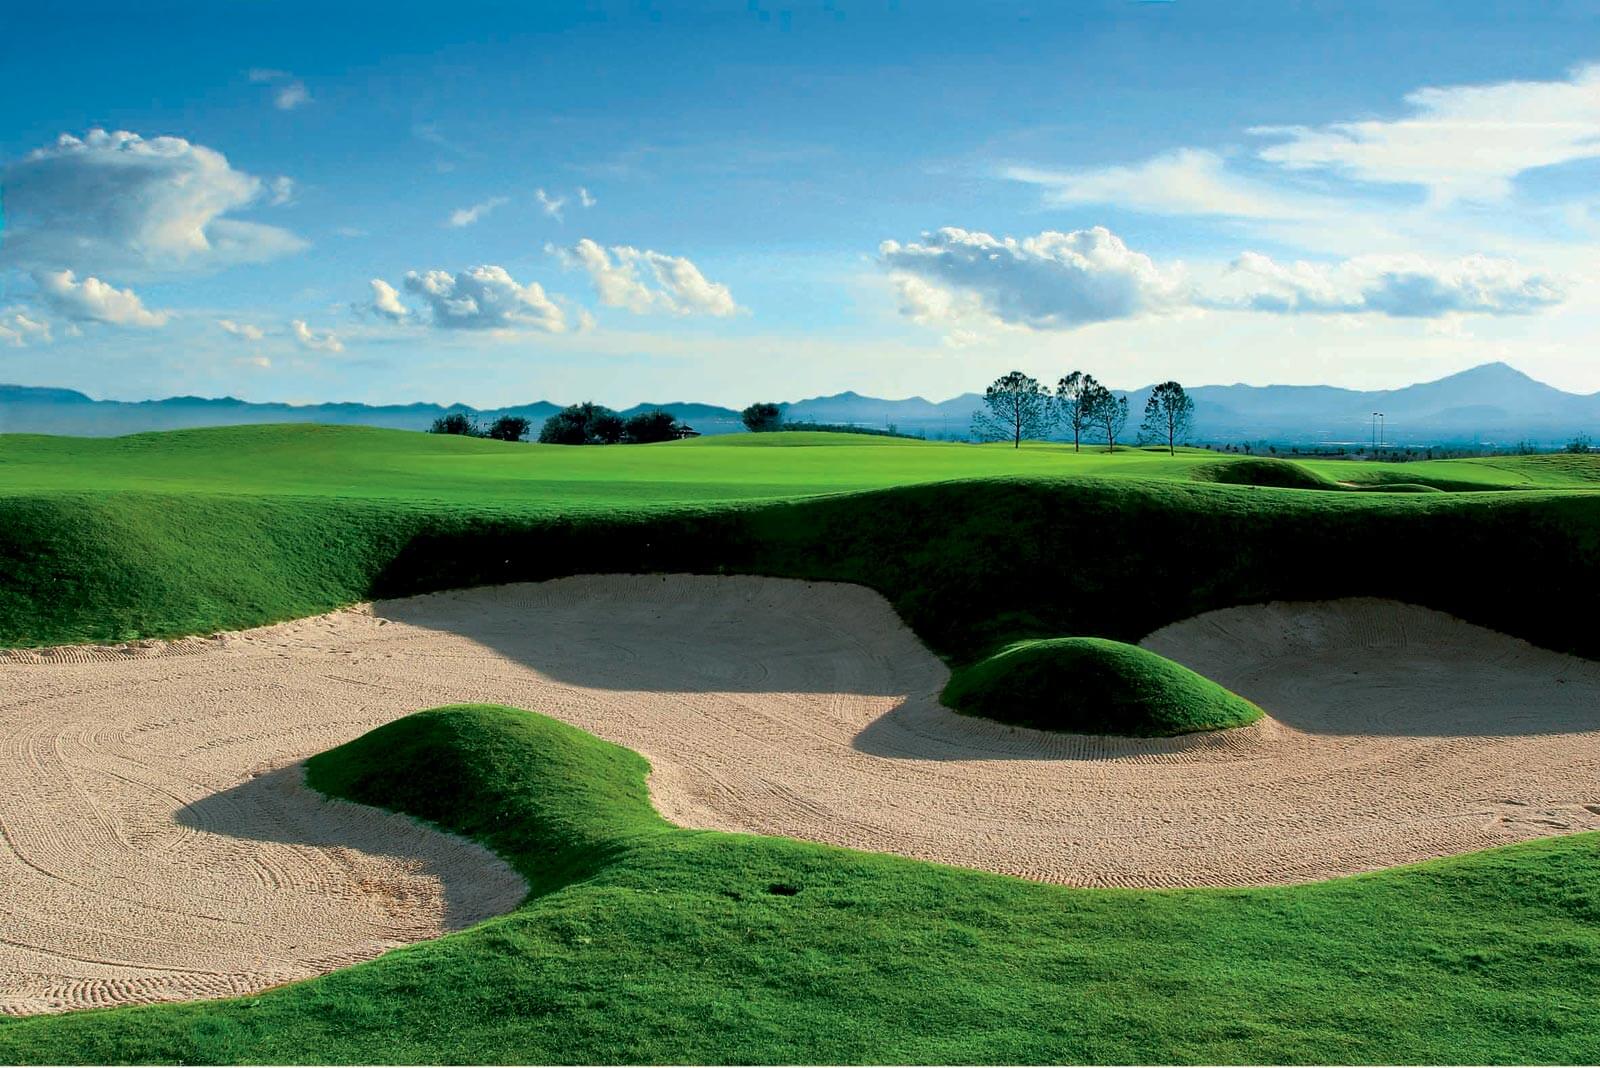 Hacienda del Alamo Golf Course